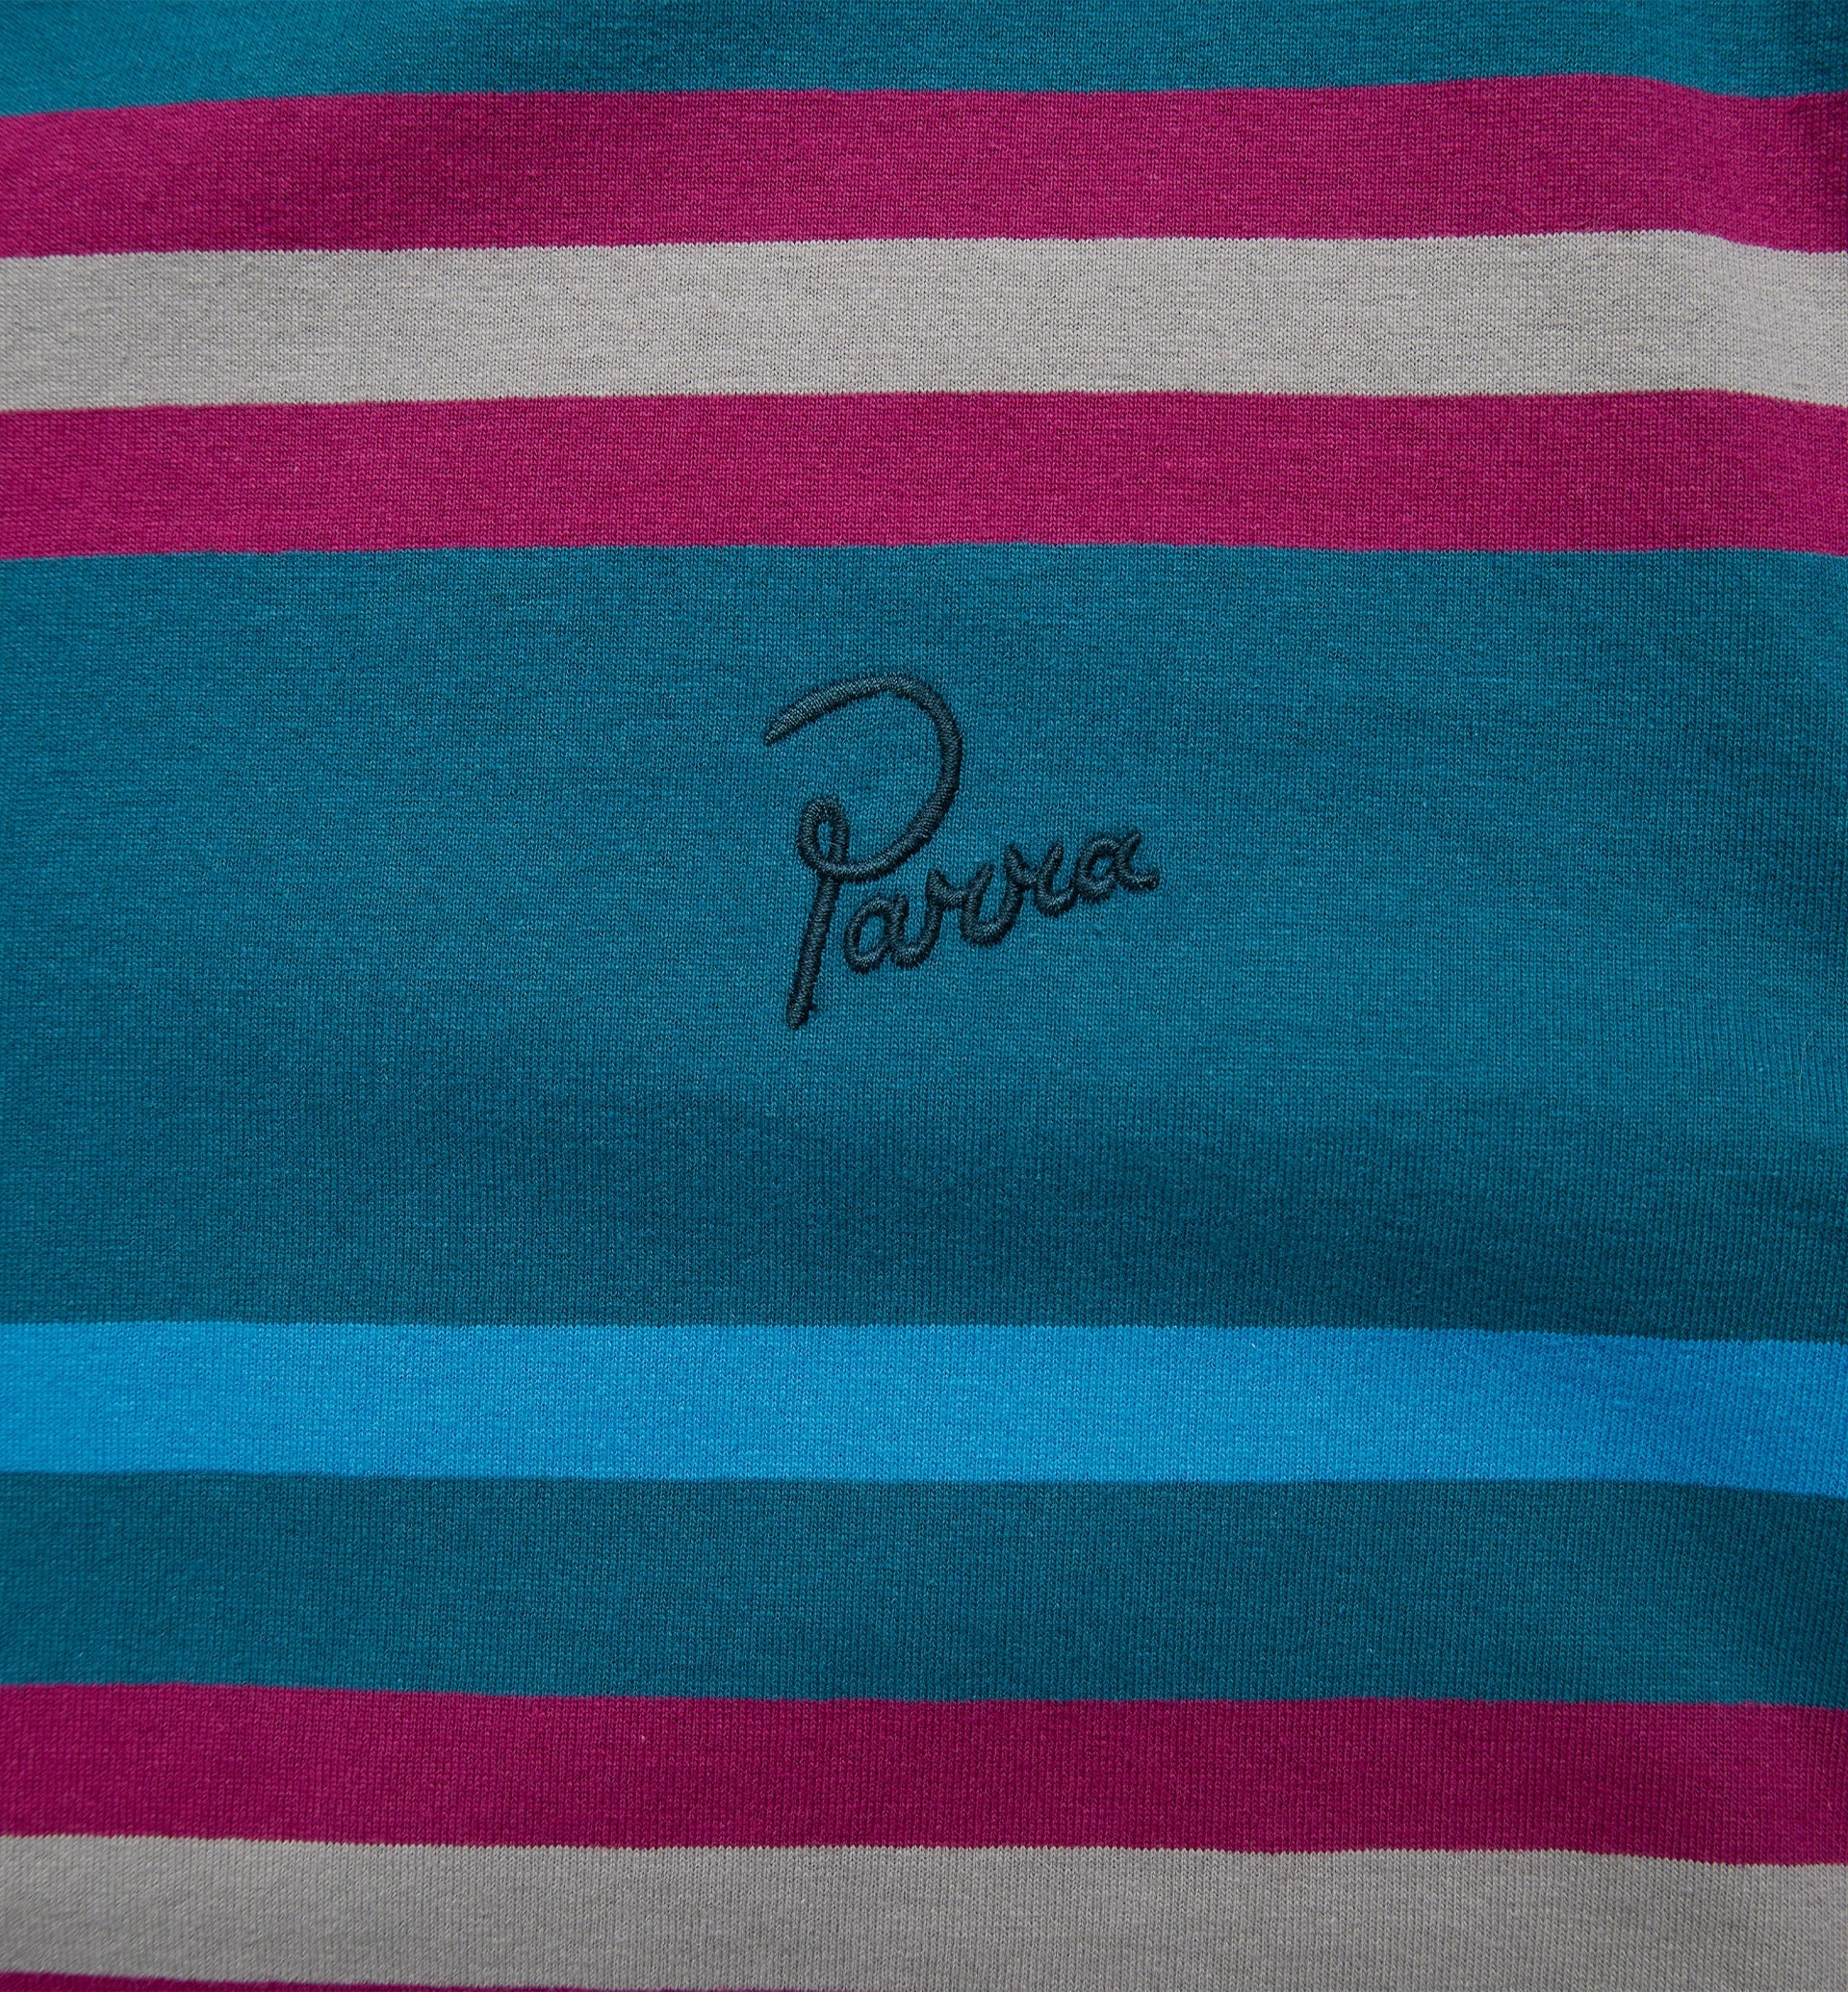 Parra - stripeys t-shirt